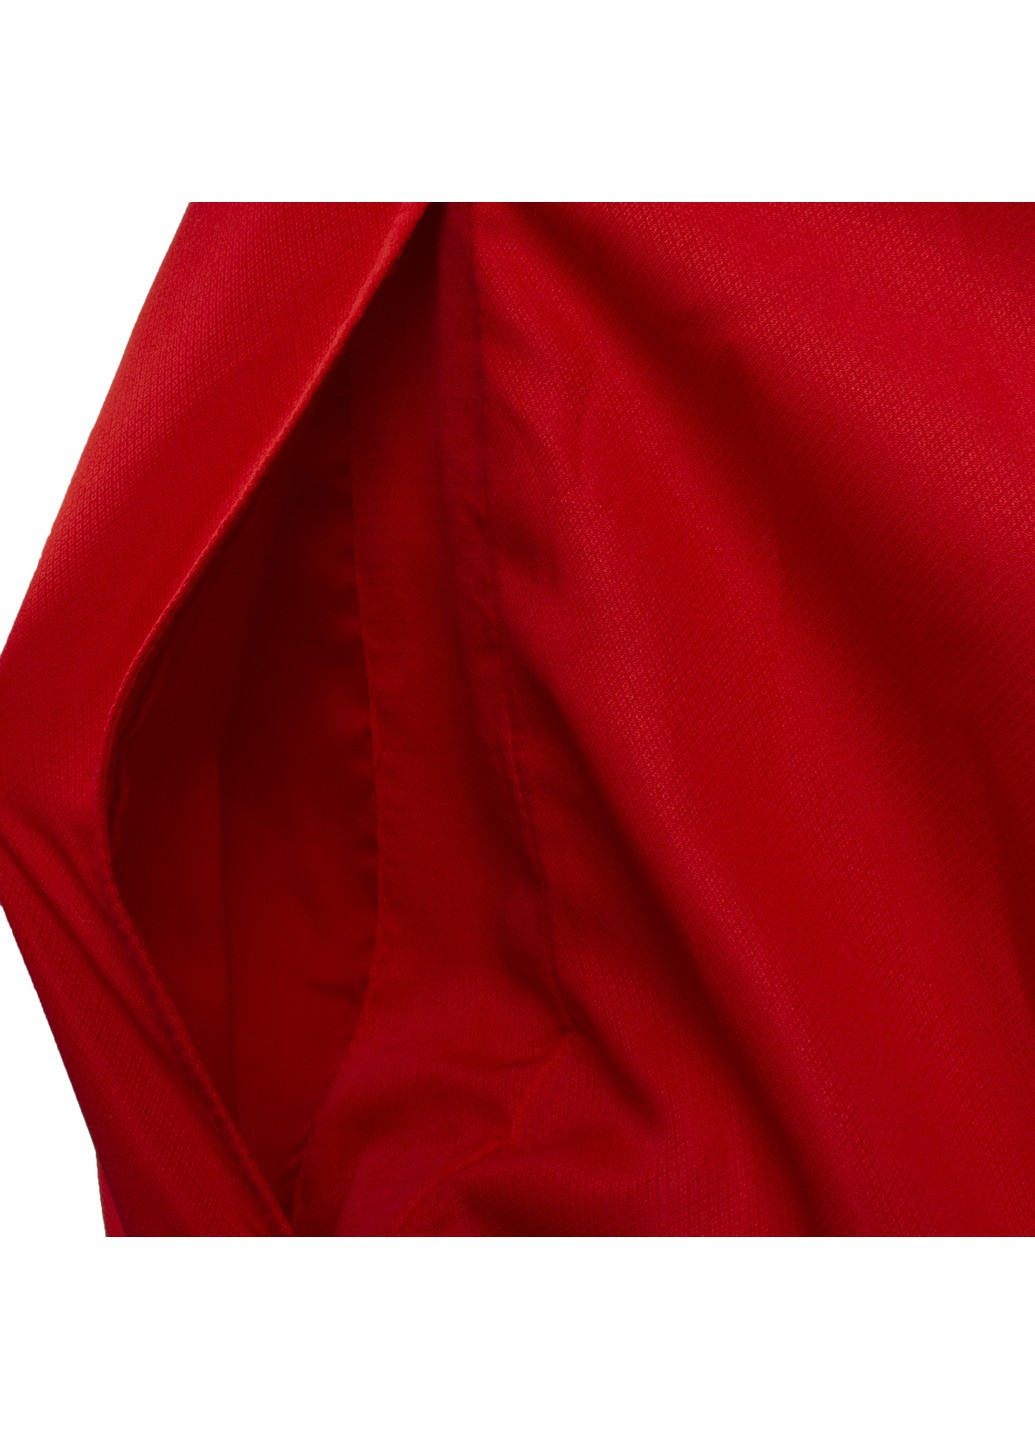 Червона куртка чоловіча New Balance